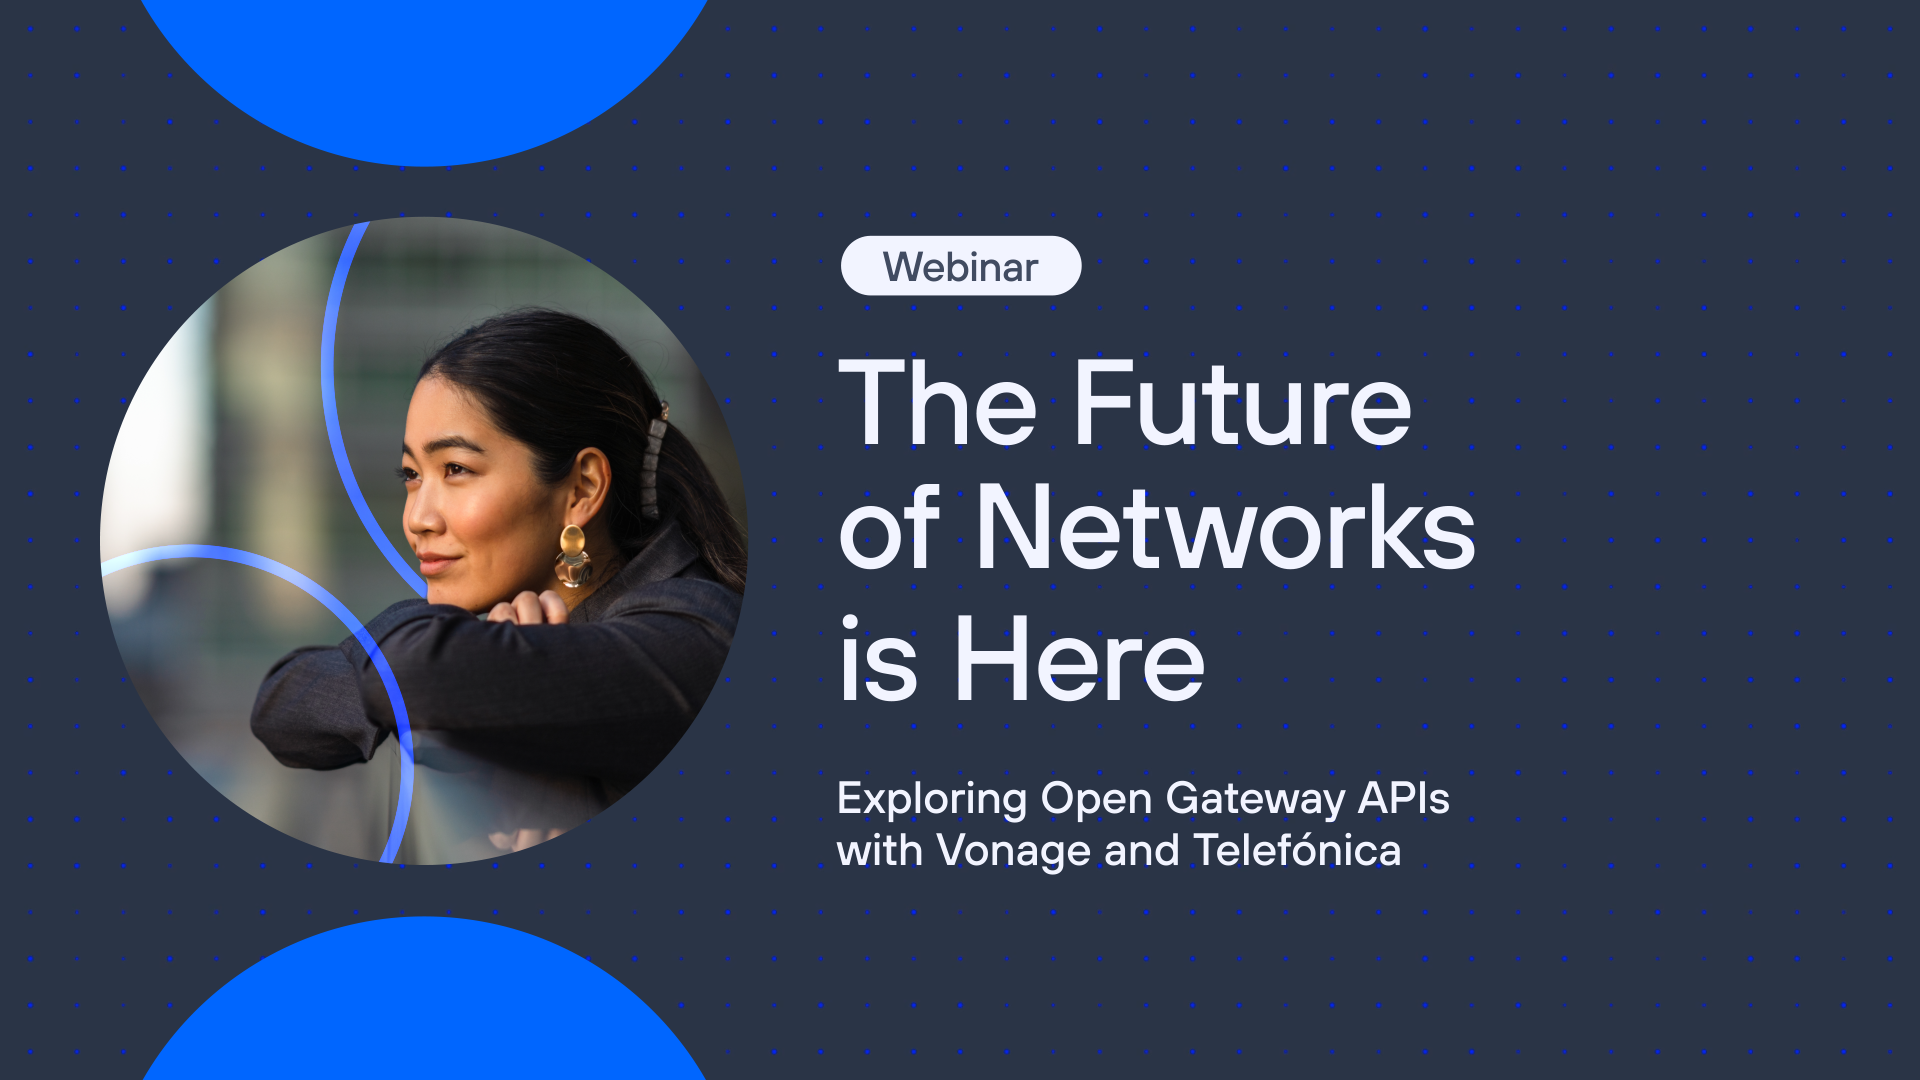 El futuro de las redes ya está aquí: Explorando las APIs de Open Gateway con Vonage y Telefónica.